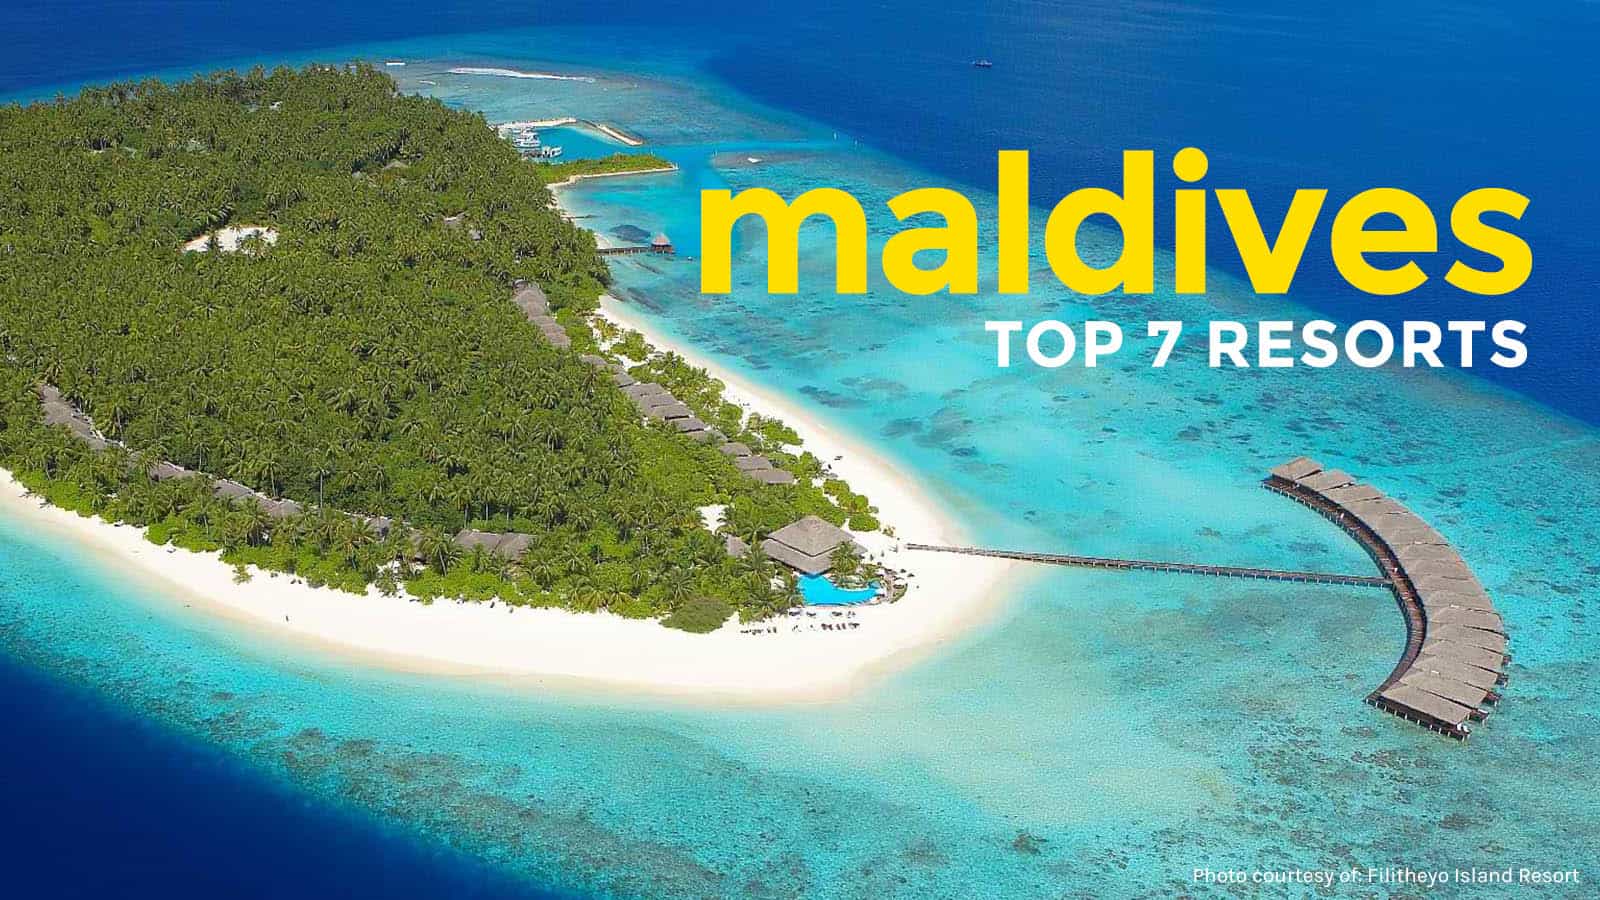 马尔代夫:200美元以下的前7大度假胜地